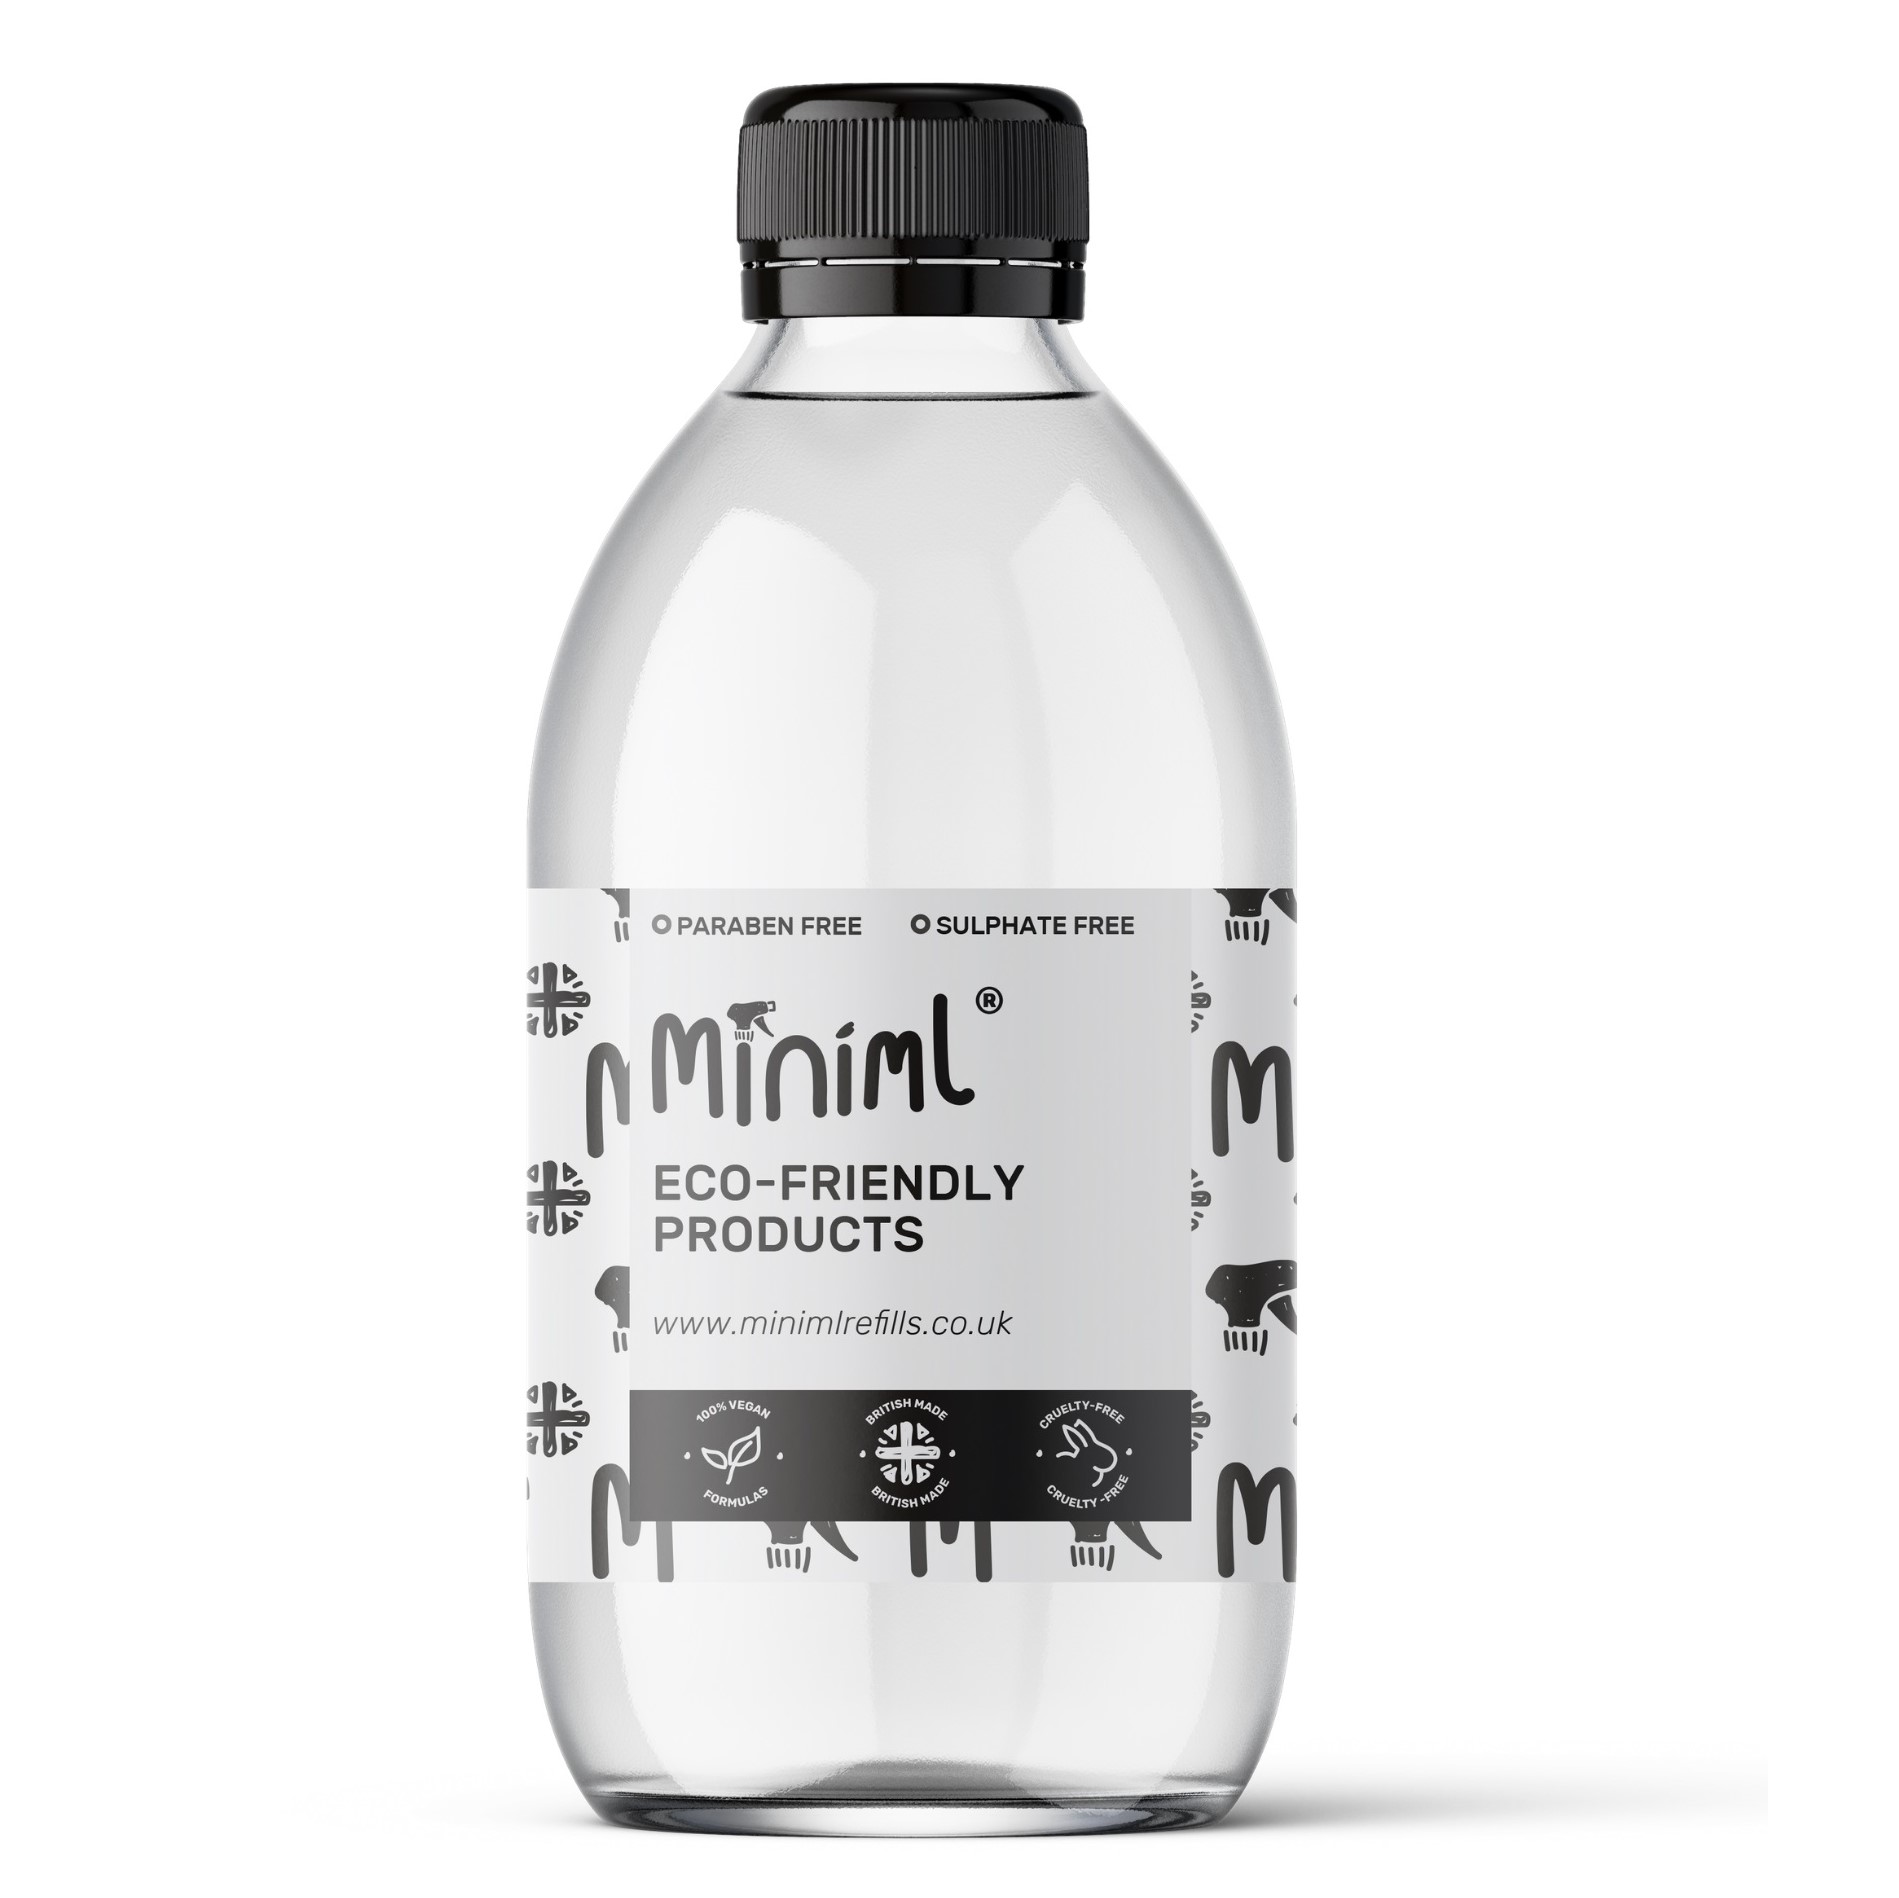 500ml Glass Bottle by Miniml